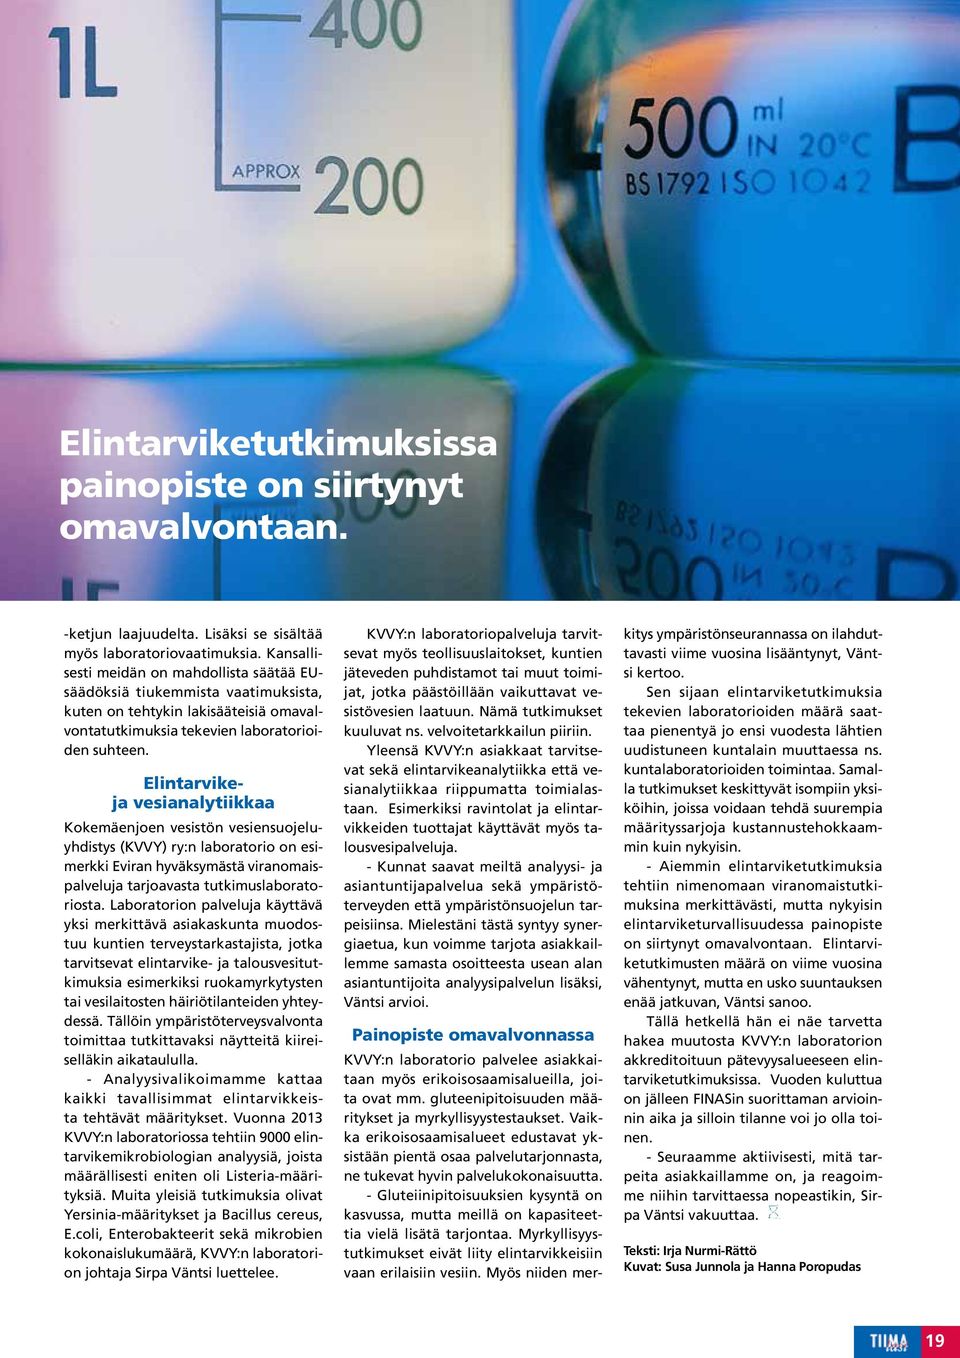 Elintarvikeja vesianalytiikkaa Kokemäenjoen vesistön vesiensuojeluyhdistys (KVVY) ry:n laboratorio on esimerkki Eviran hyväksymästä viranomaispalveluja tarjoavasta tutkimuslaboratoriosta.